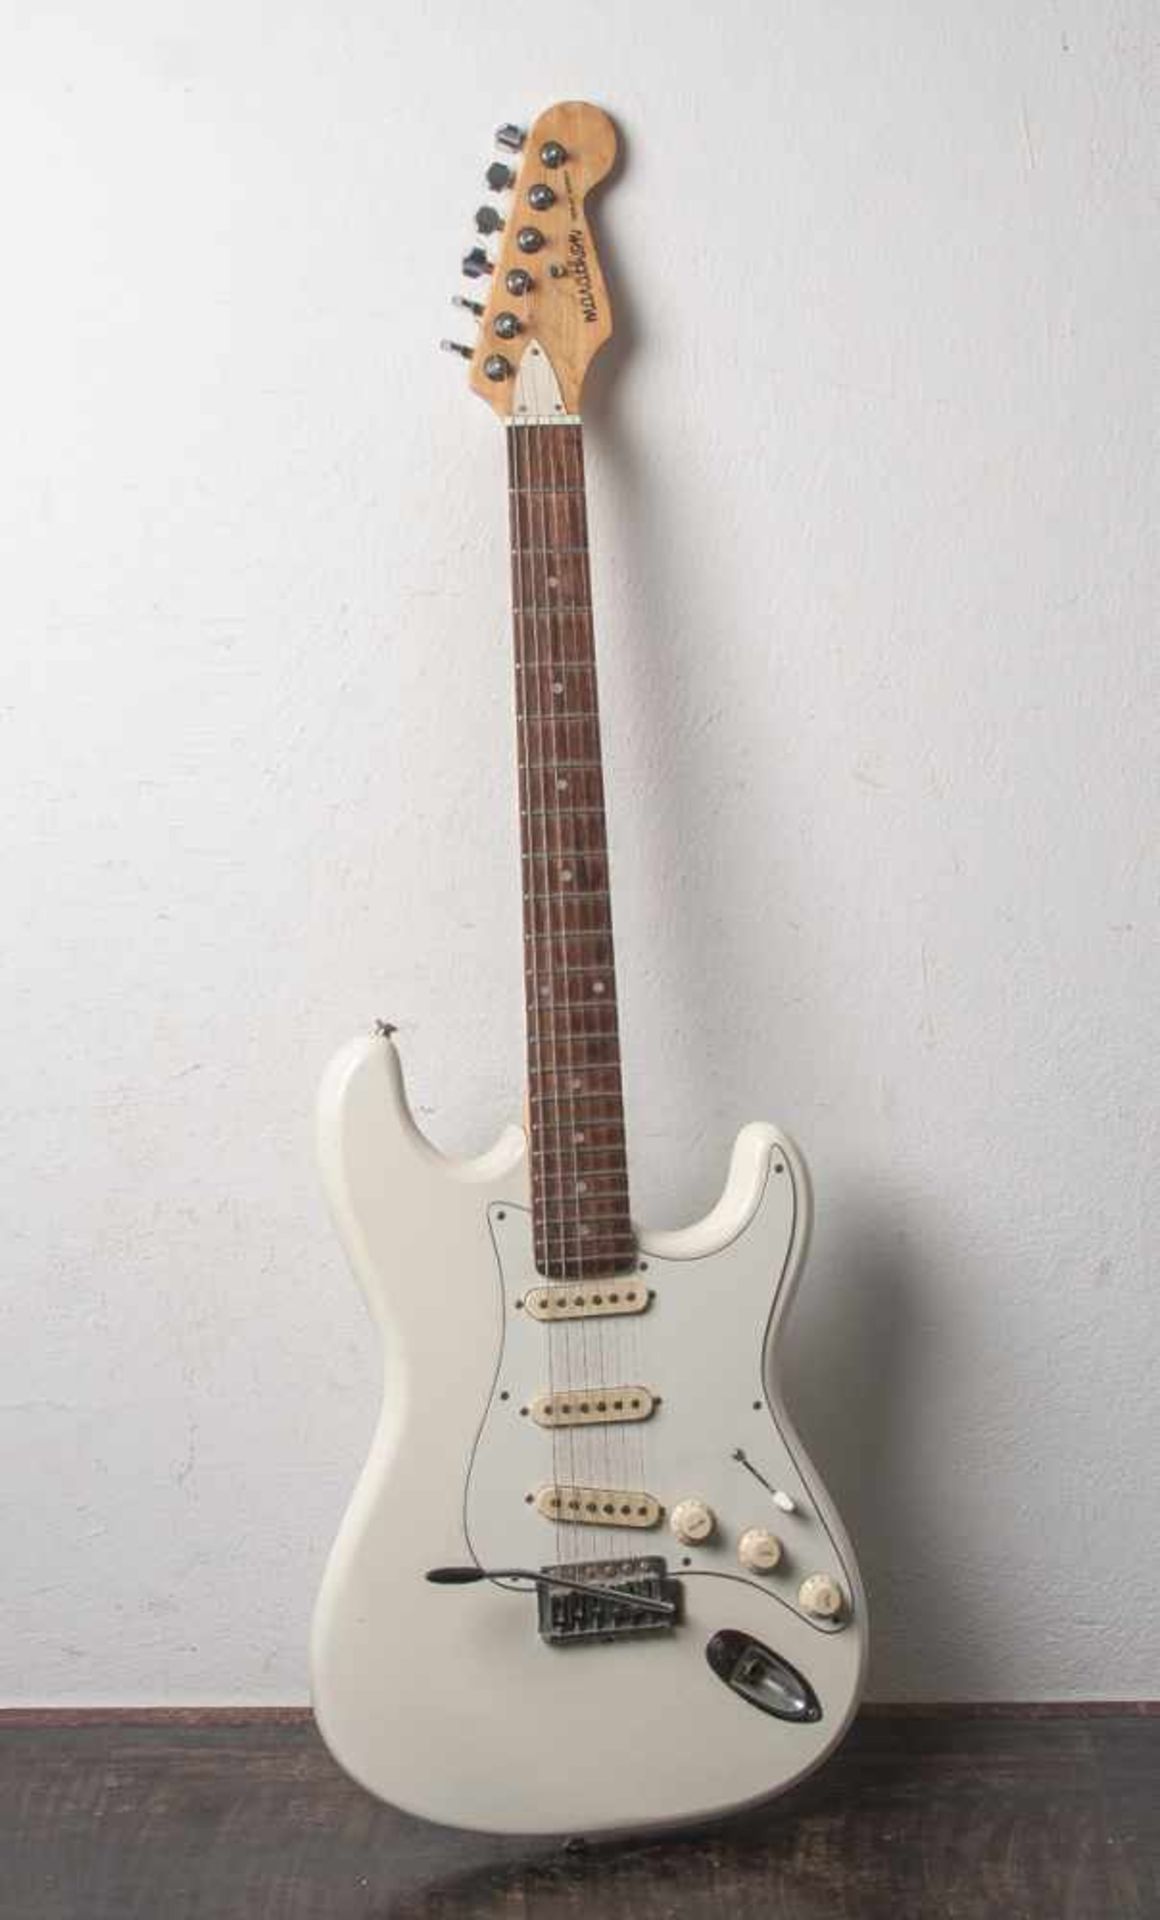 E-Gitarre Marathon Replay Series, Stratocaster mit Tremolohebel, 6 Saiten.Gebrauchsspuren.